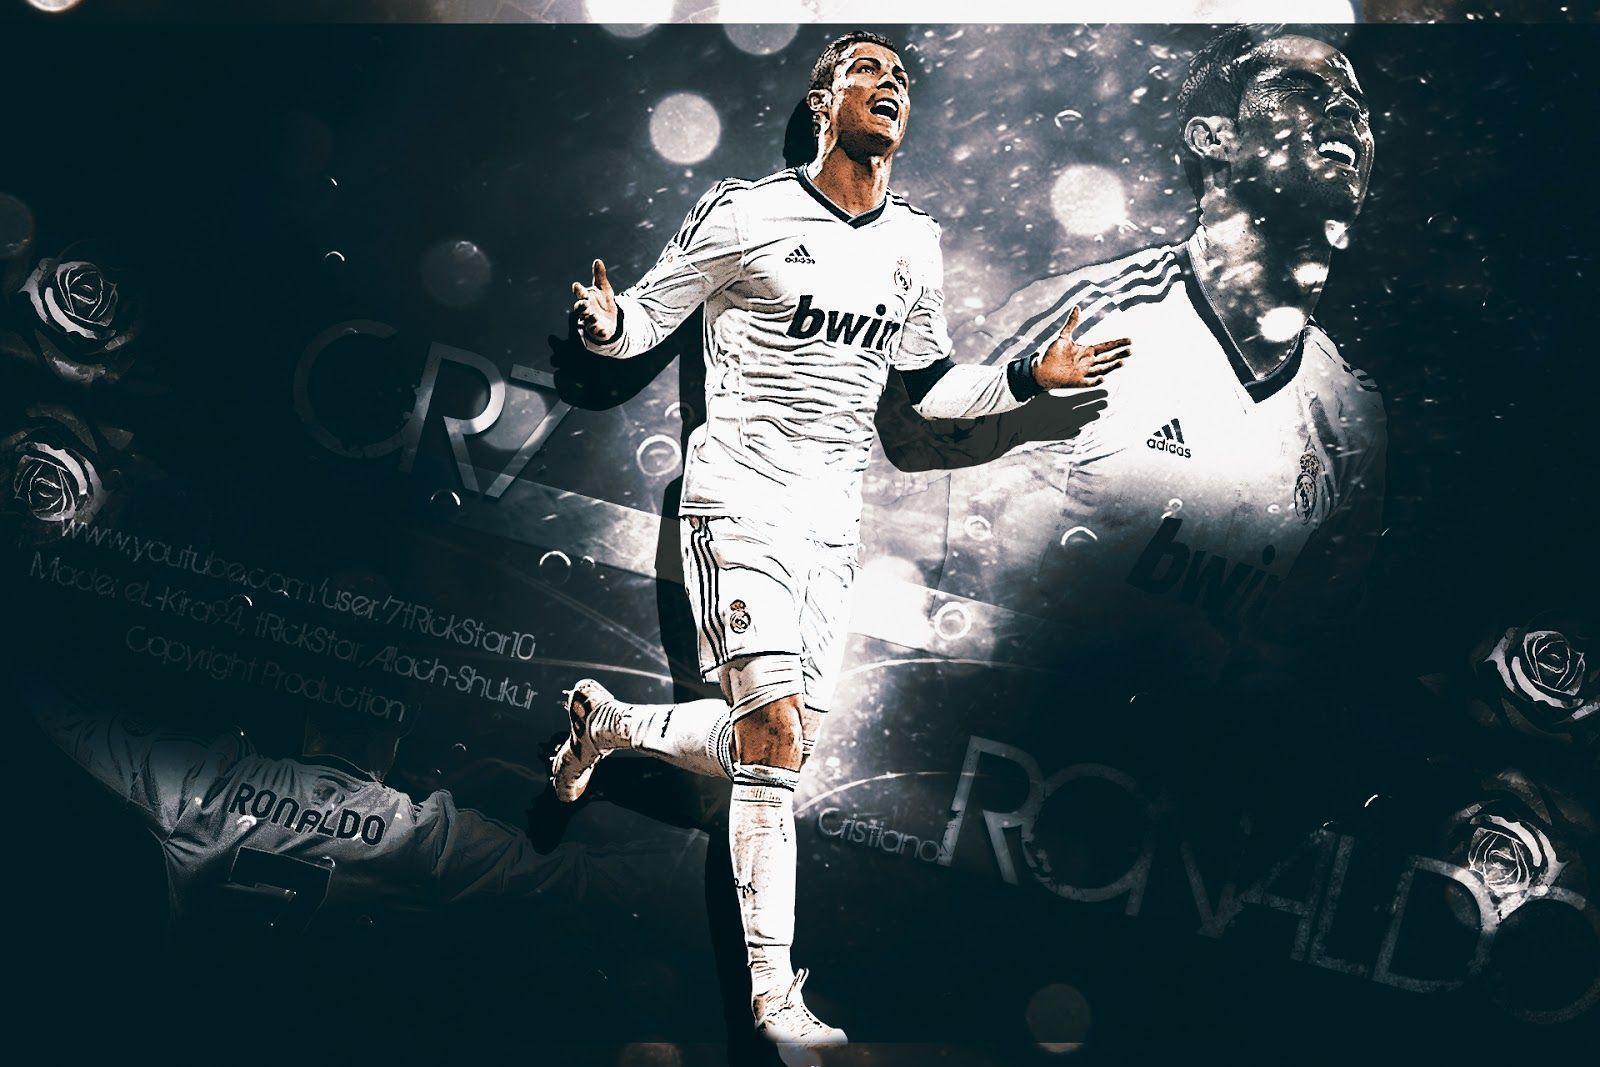 Cristiano Ronaldo New HD Wallpaper 2014 2015 Background